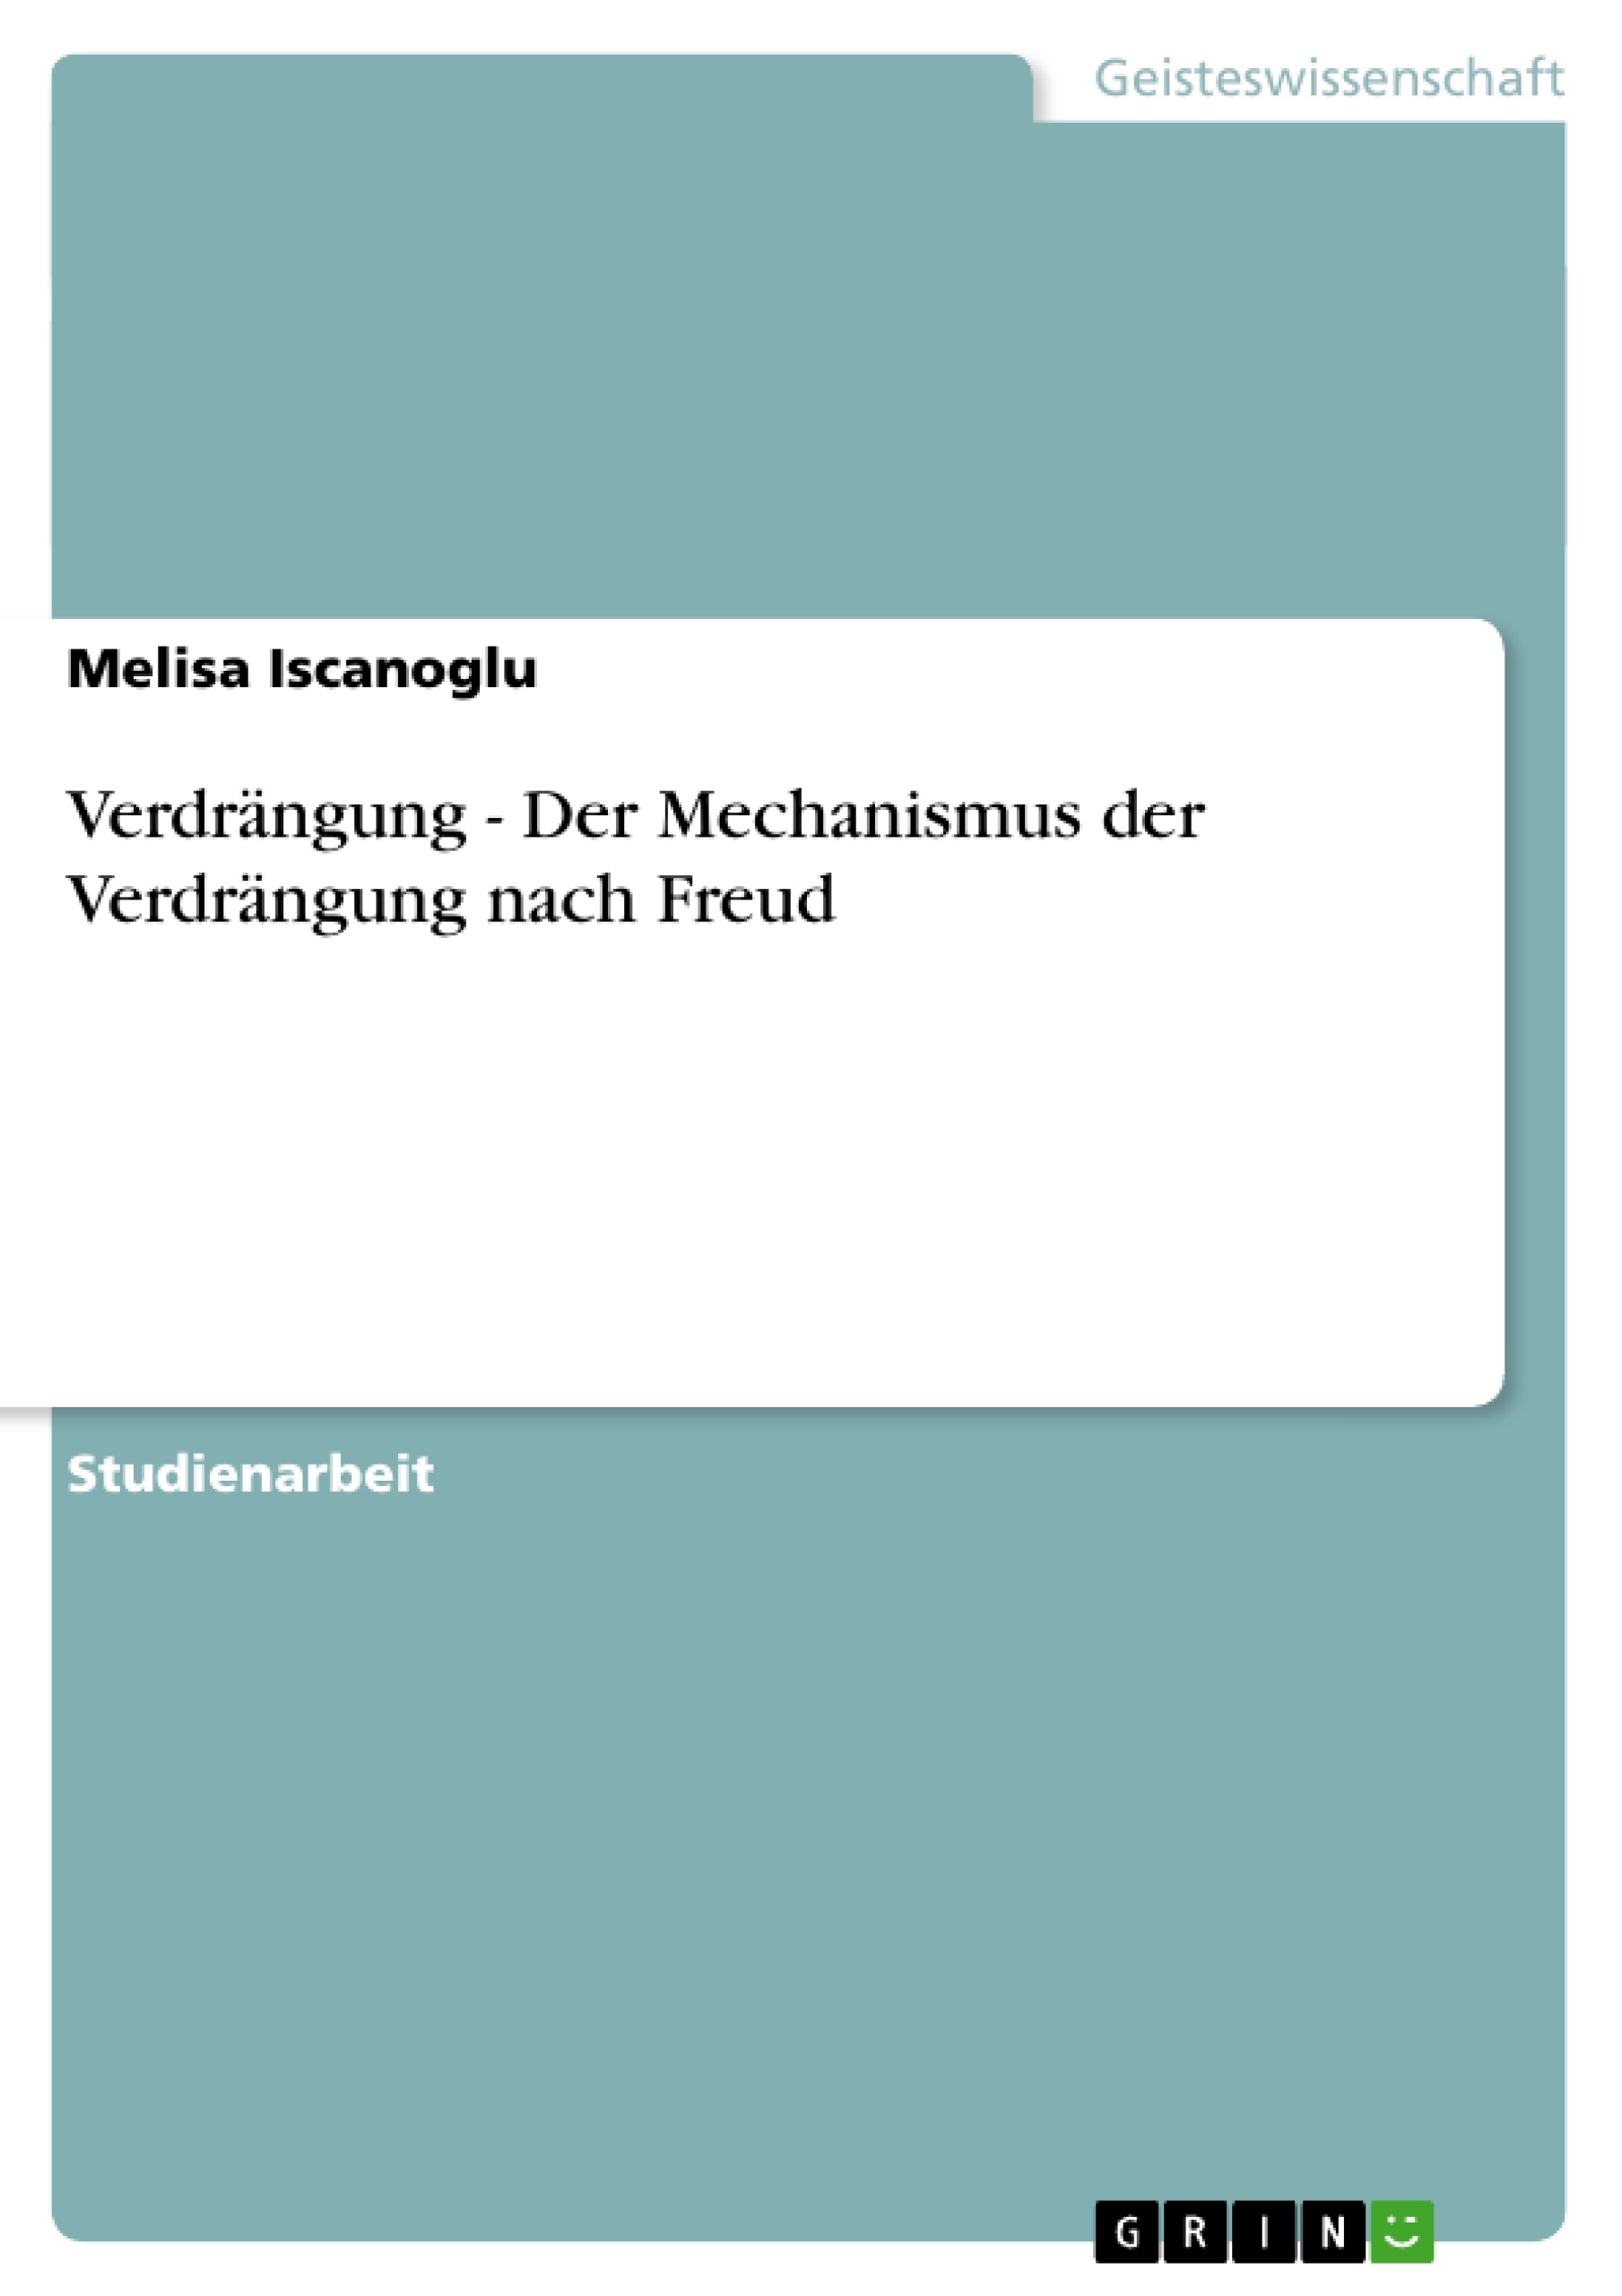 Title: Verdrängung - Der Mechanismus der Verdrängung nach Freud